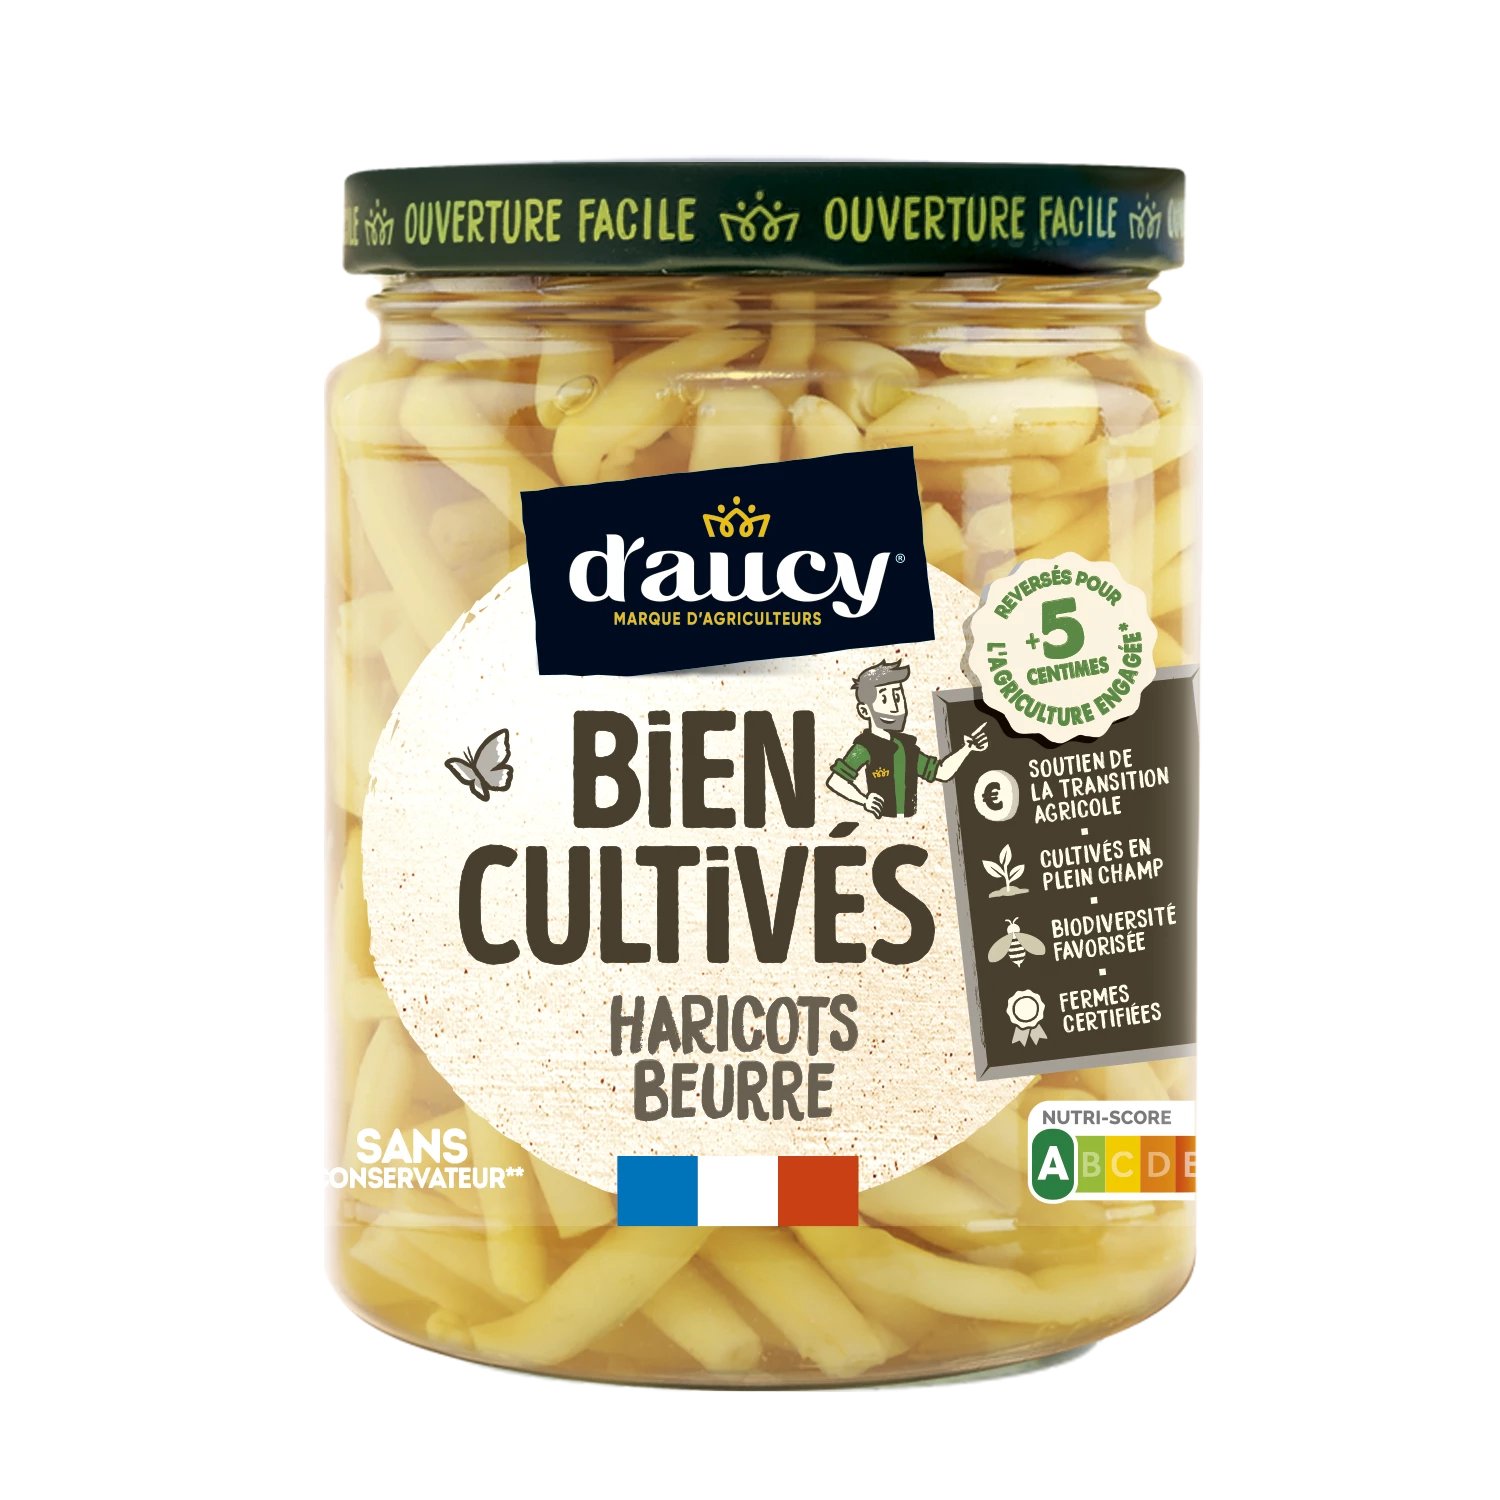 Haricots Beurre Bien Cultivés; 500g - D'AUCY